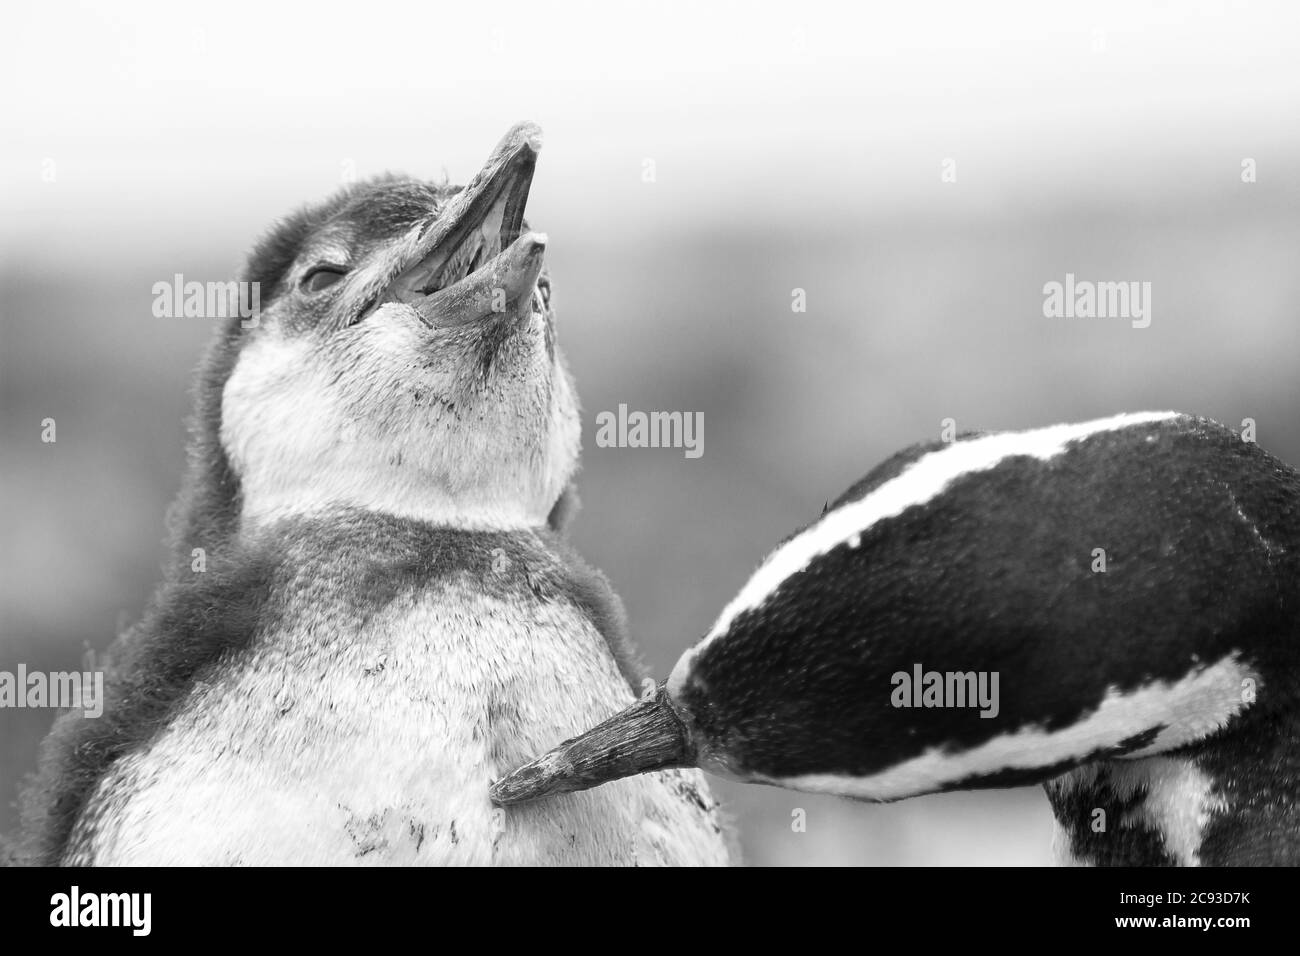 Colpo di primo piano in scala di grigi di due simpatici pinguini che giocano con ciascuno altro Foto Stock